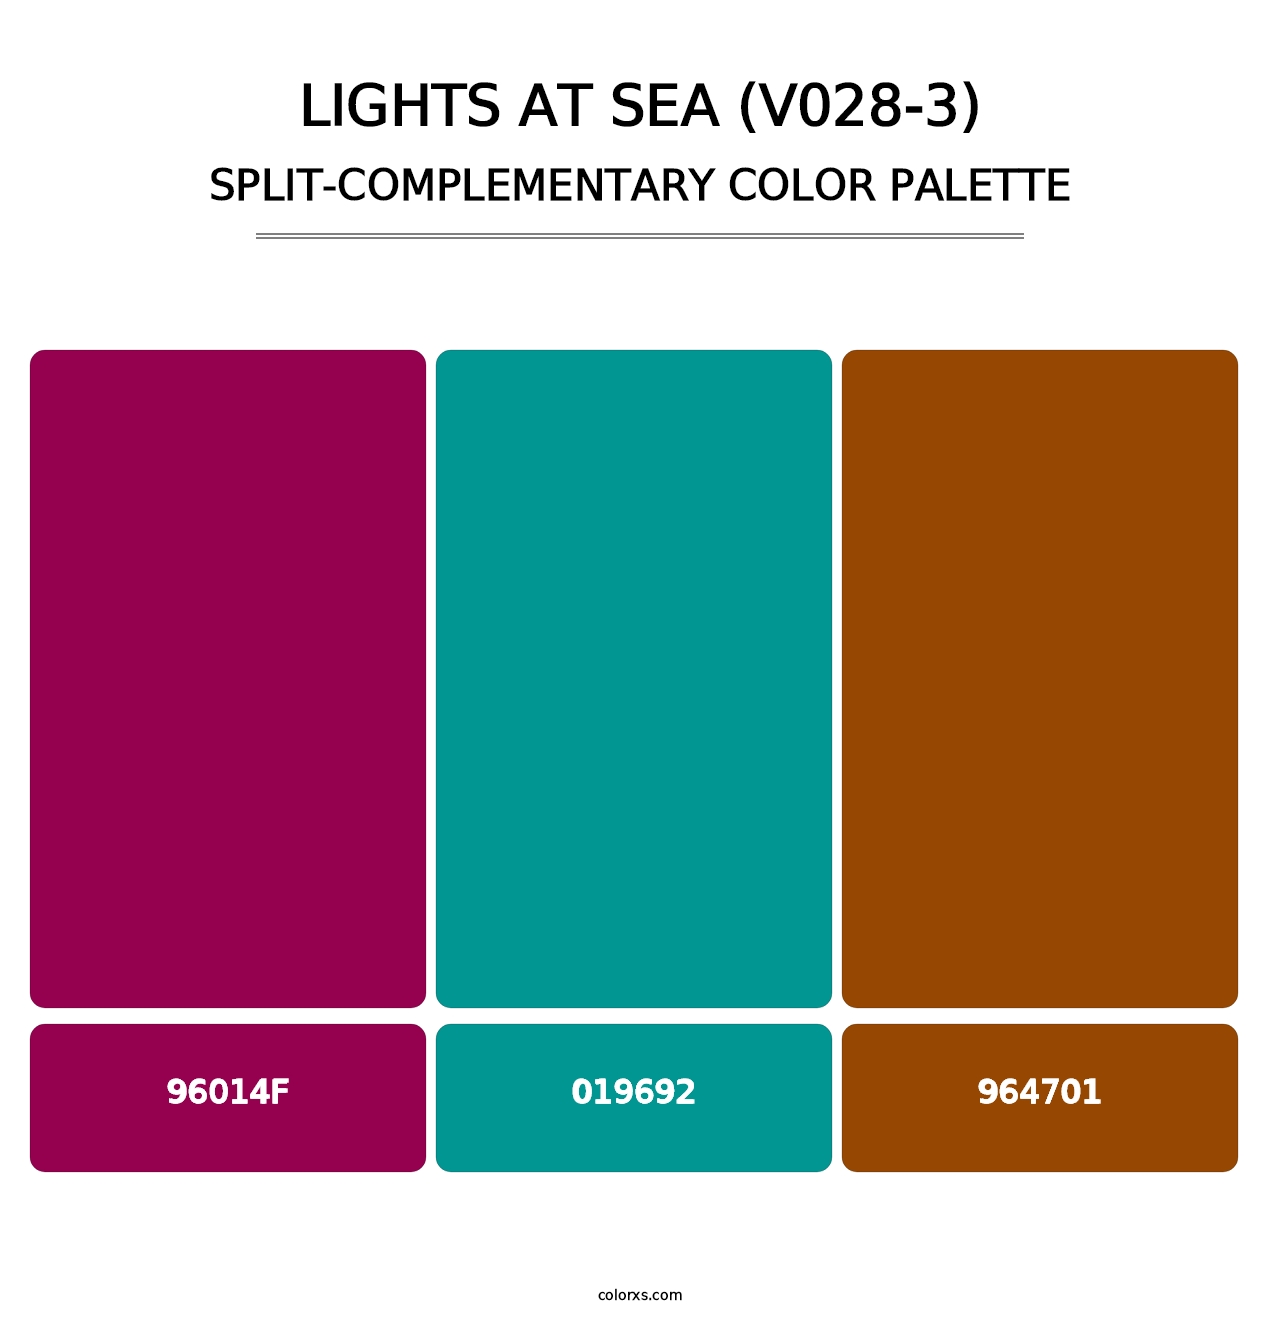 Lights at Sea (V028-3) - Split-Complementary Color Palette